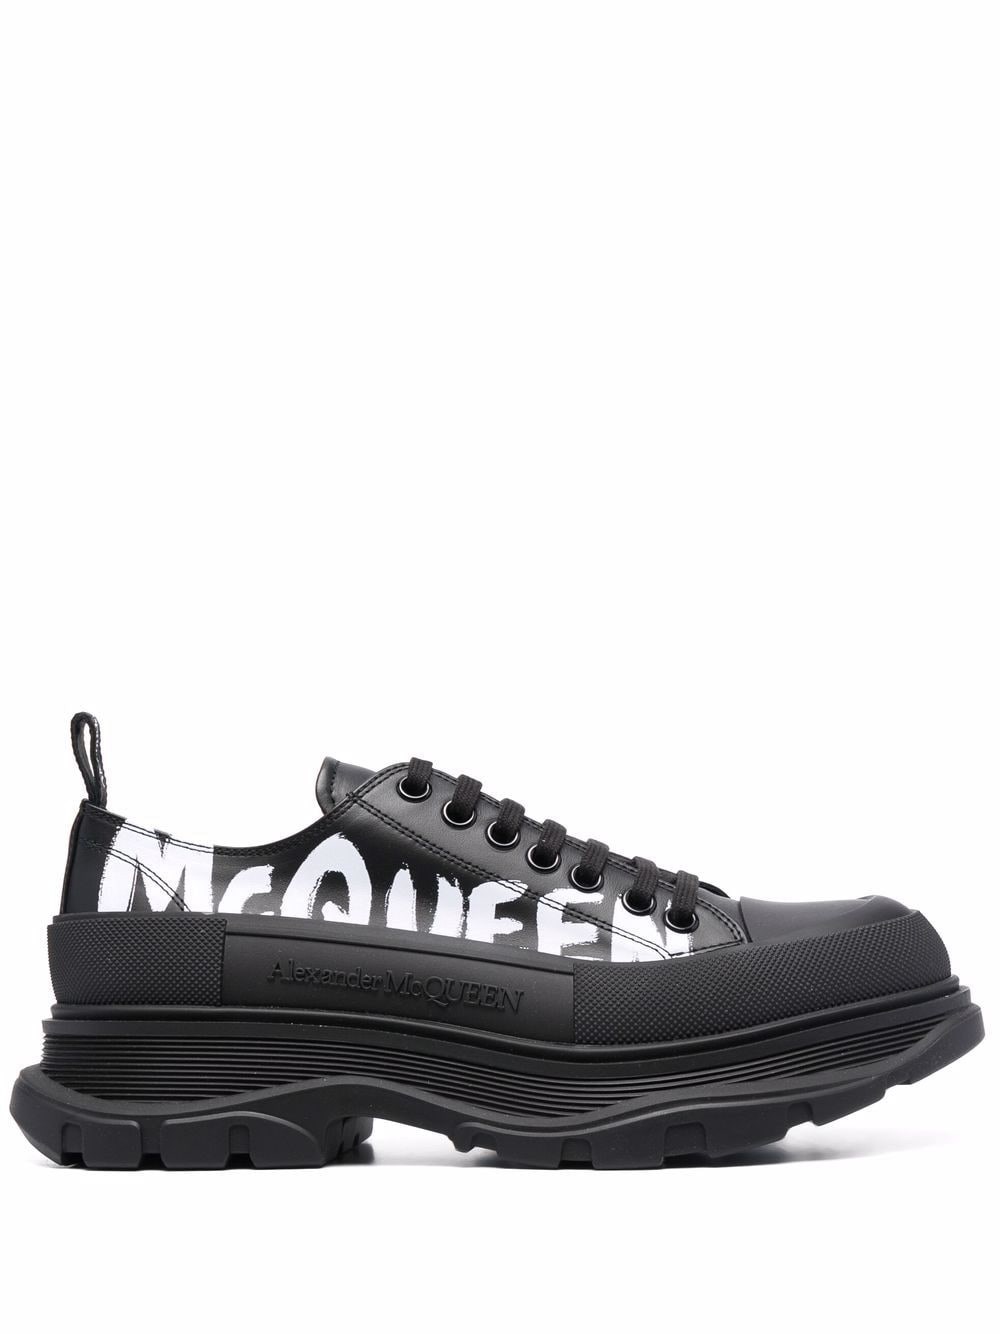 Alexander Mcqueen Black Leather Tread Slick Sneakers